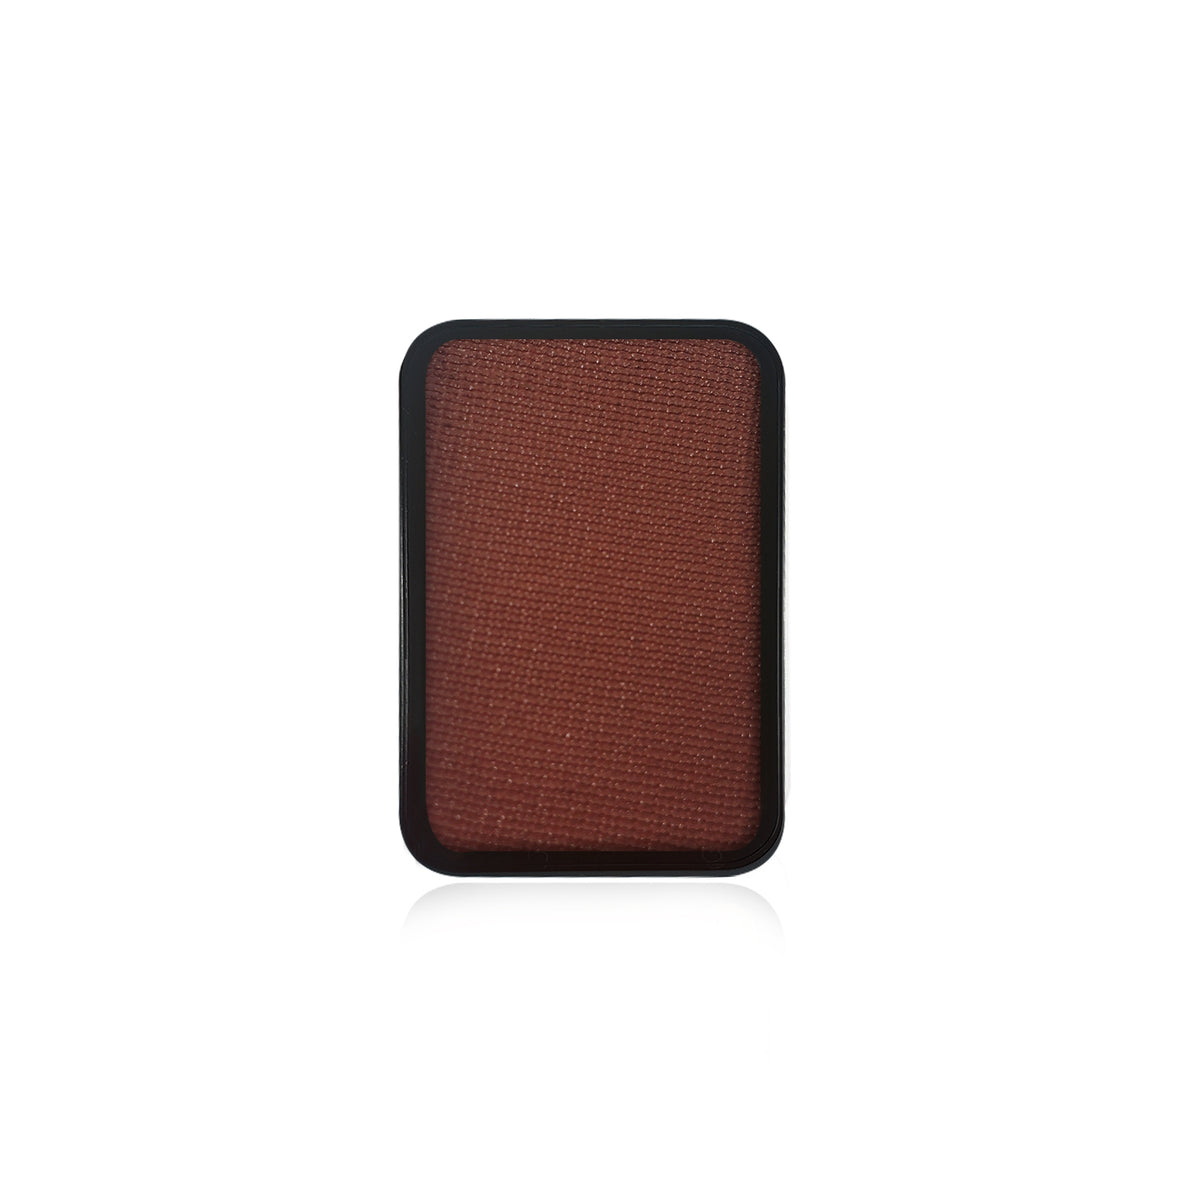 Kraze Face Paint Palette Refill - Brown (0.35 oz/10 gm)